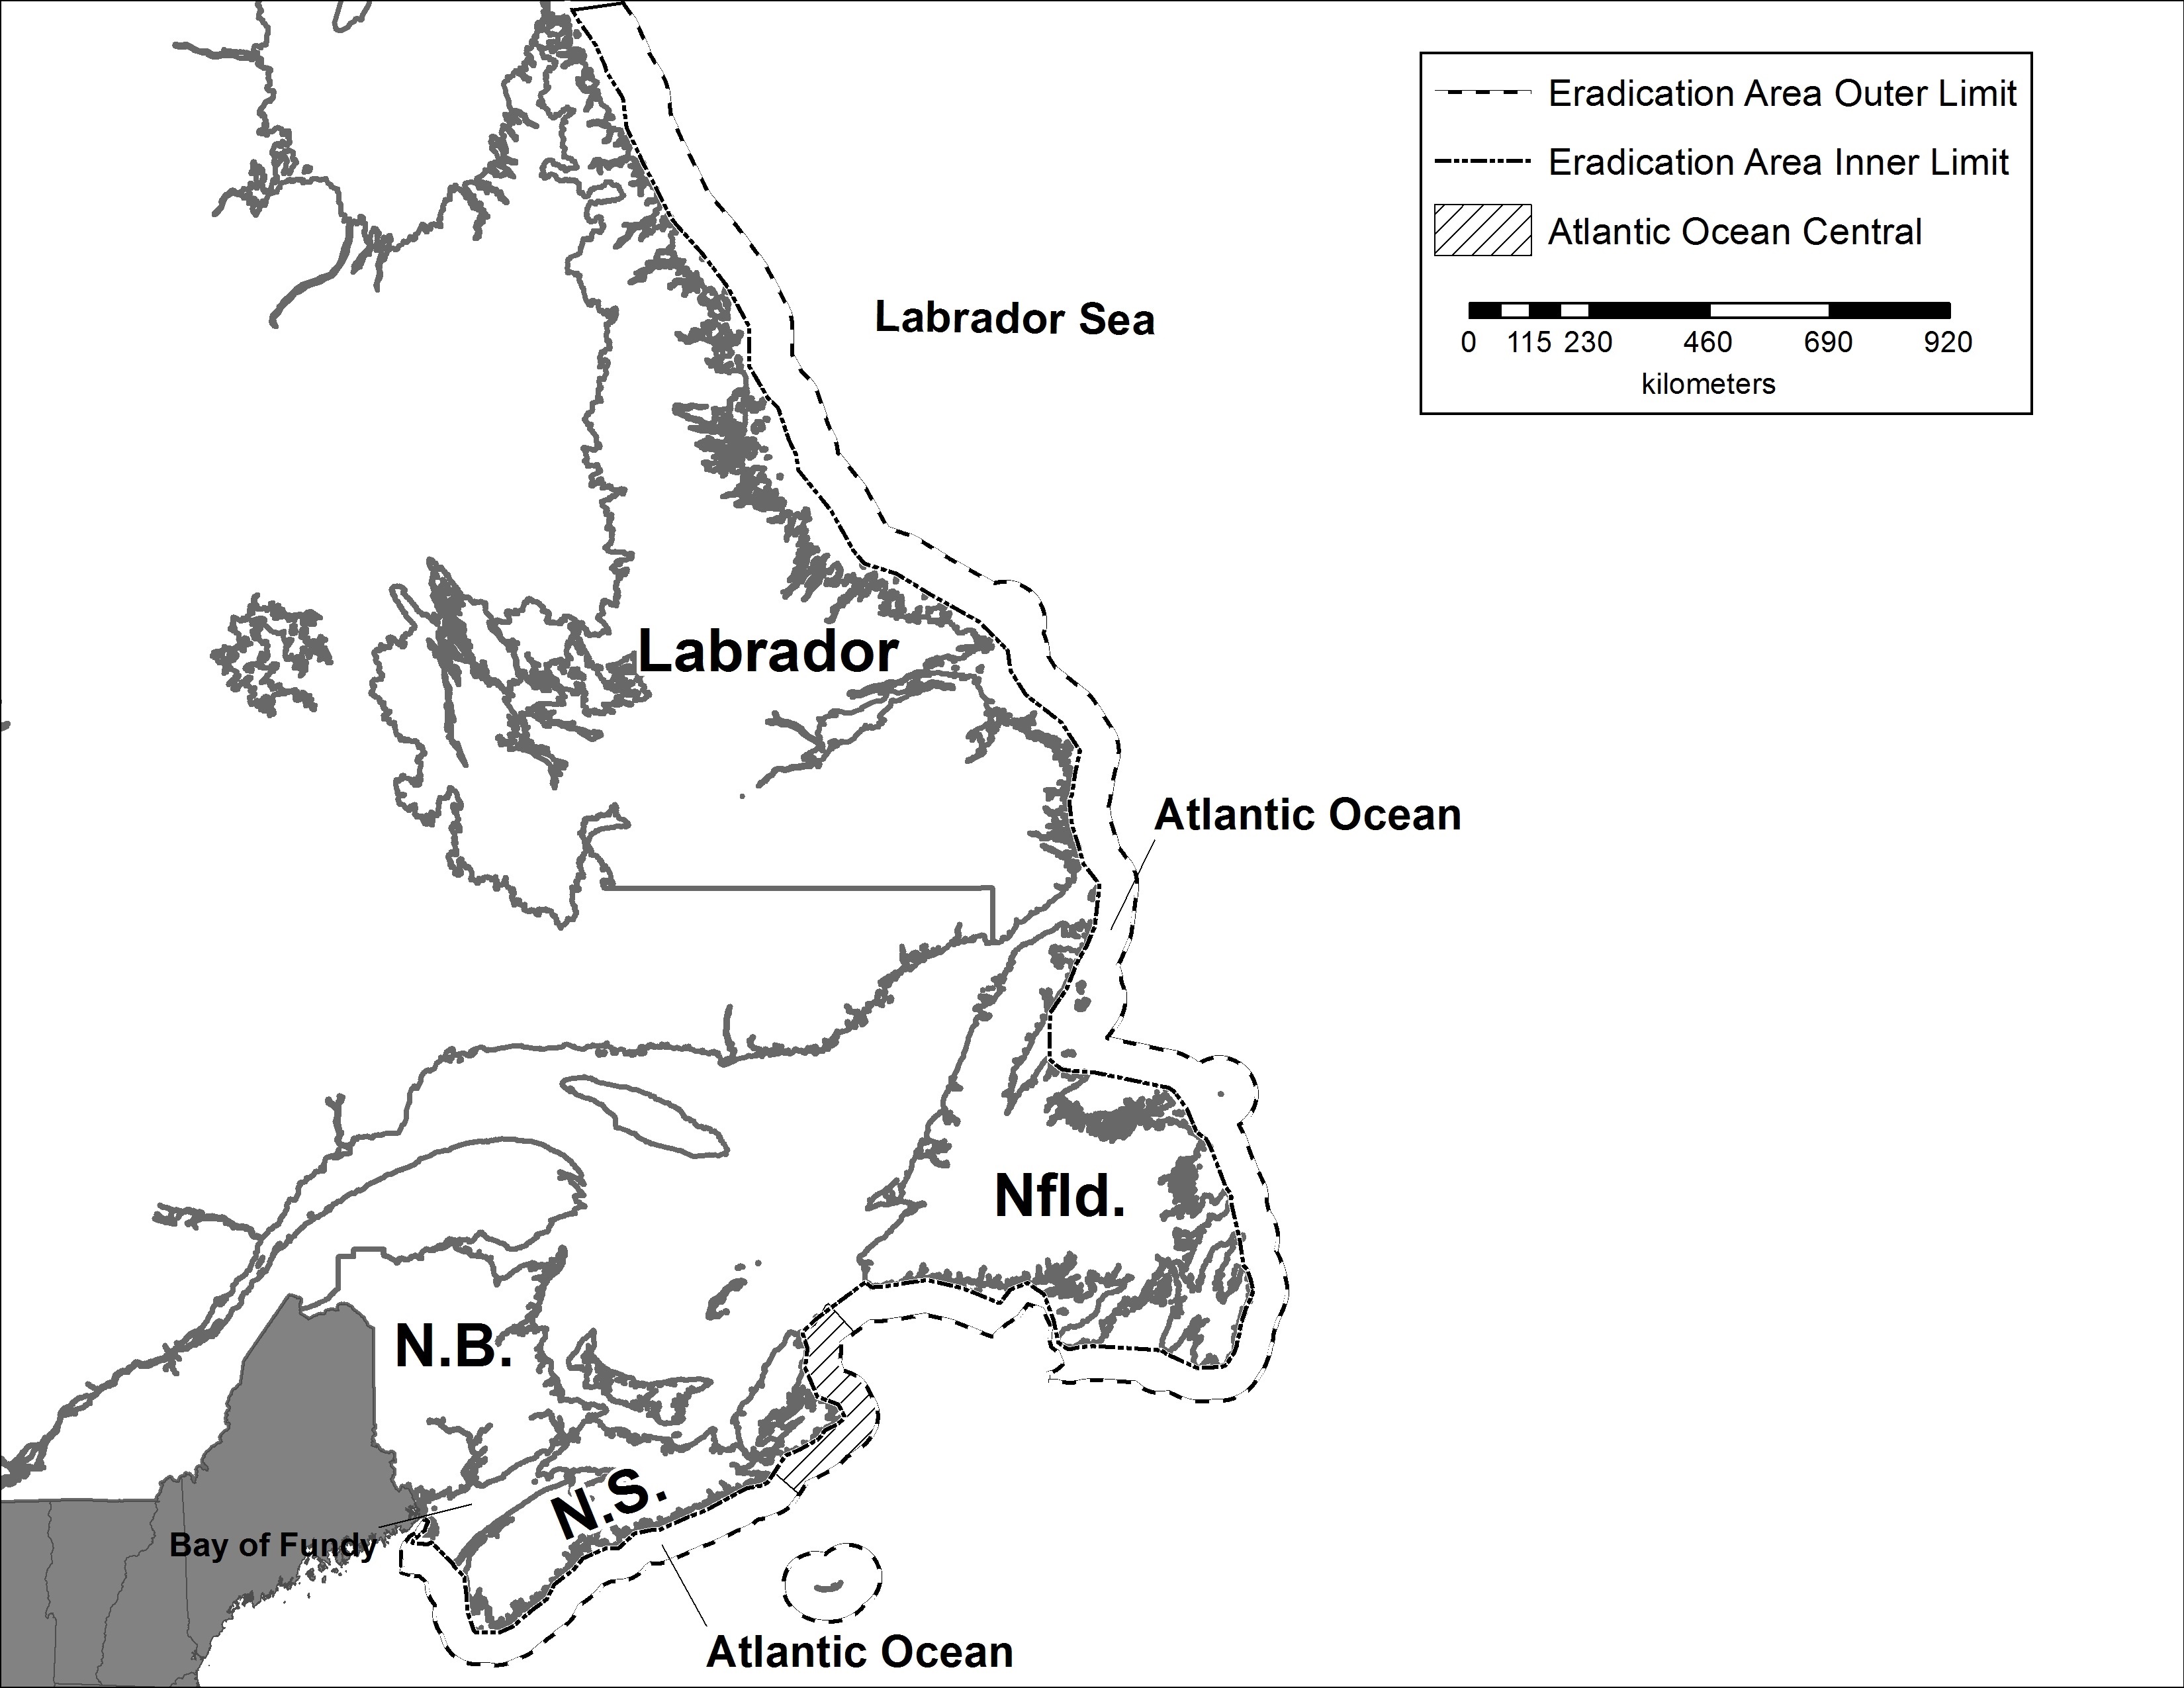 Atlantic Ocean Central map. Description follows.